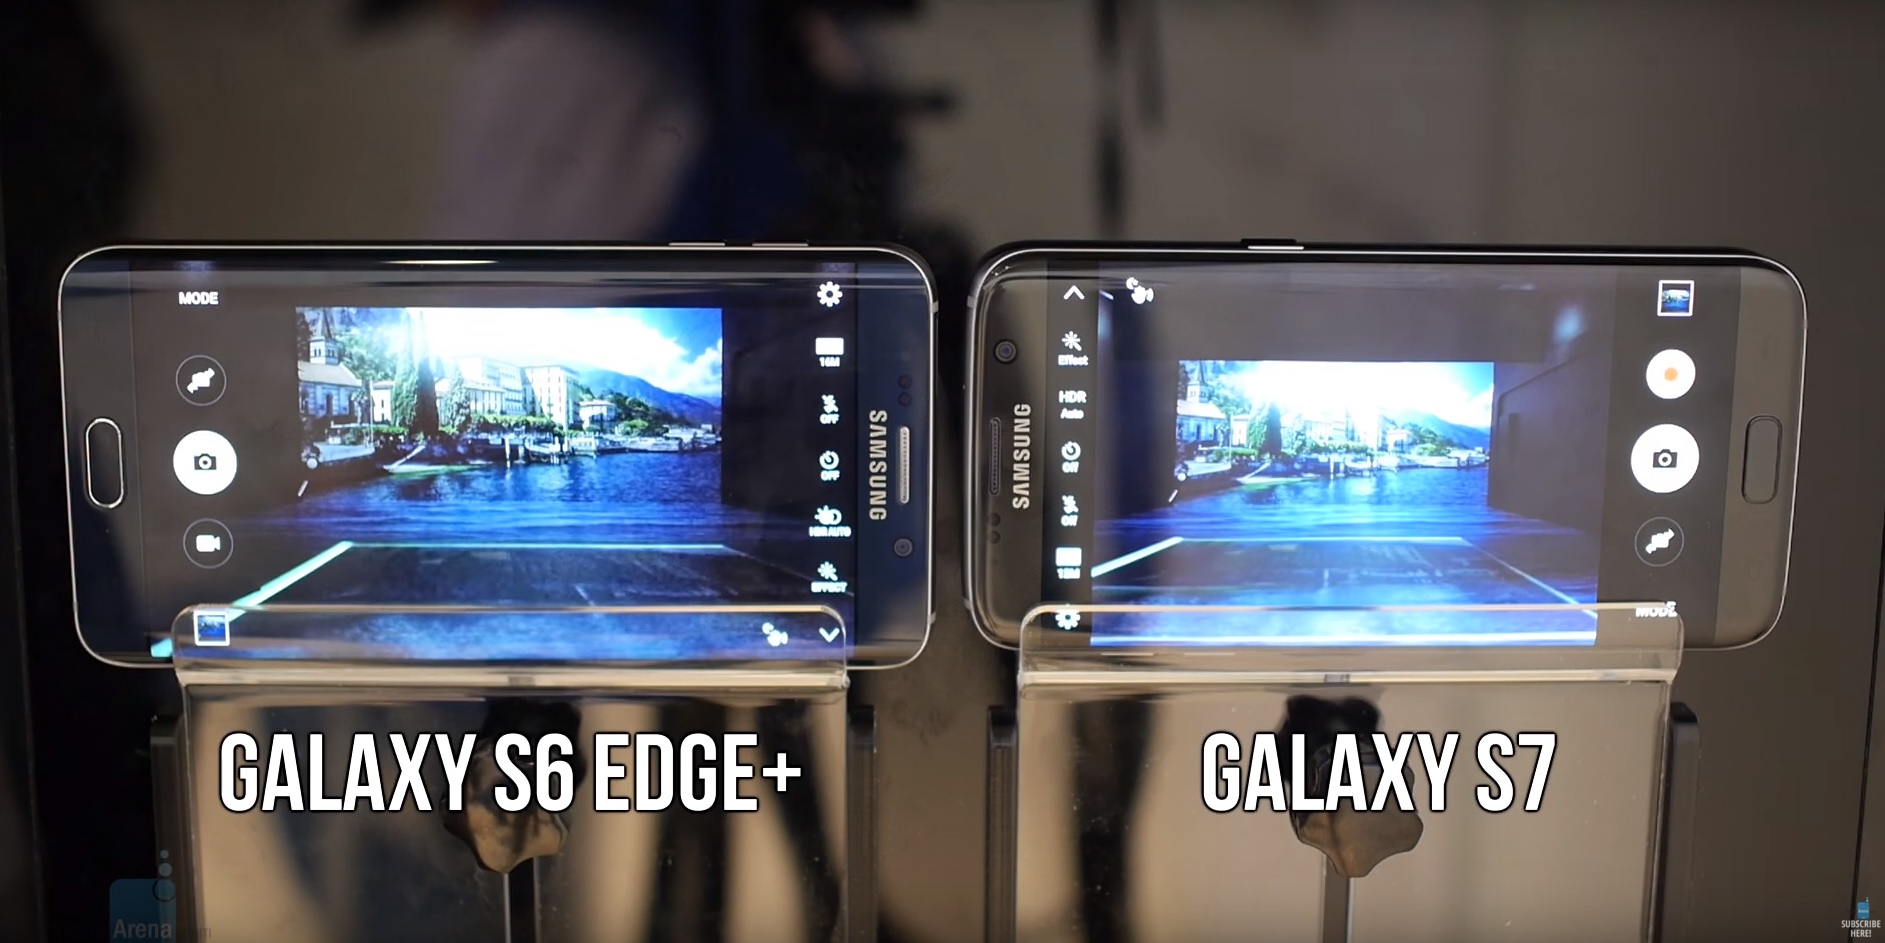 ชมคลิป !!  Samsung Galaxy S7 มีการทำงาน Autofocus ที่รวดเร็วมาก !! แม้ในขณะที่มีแสงน้อย